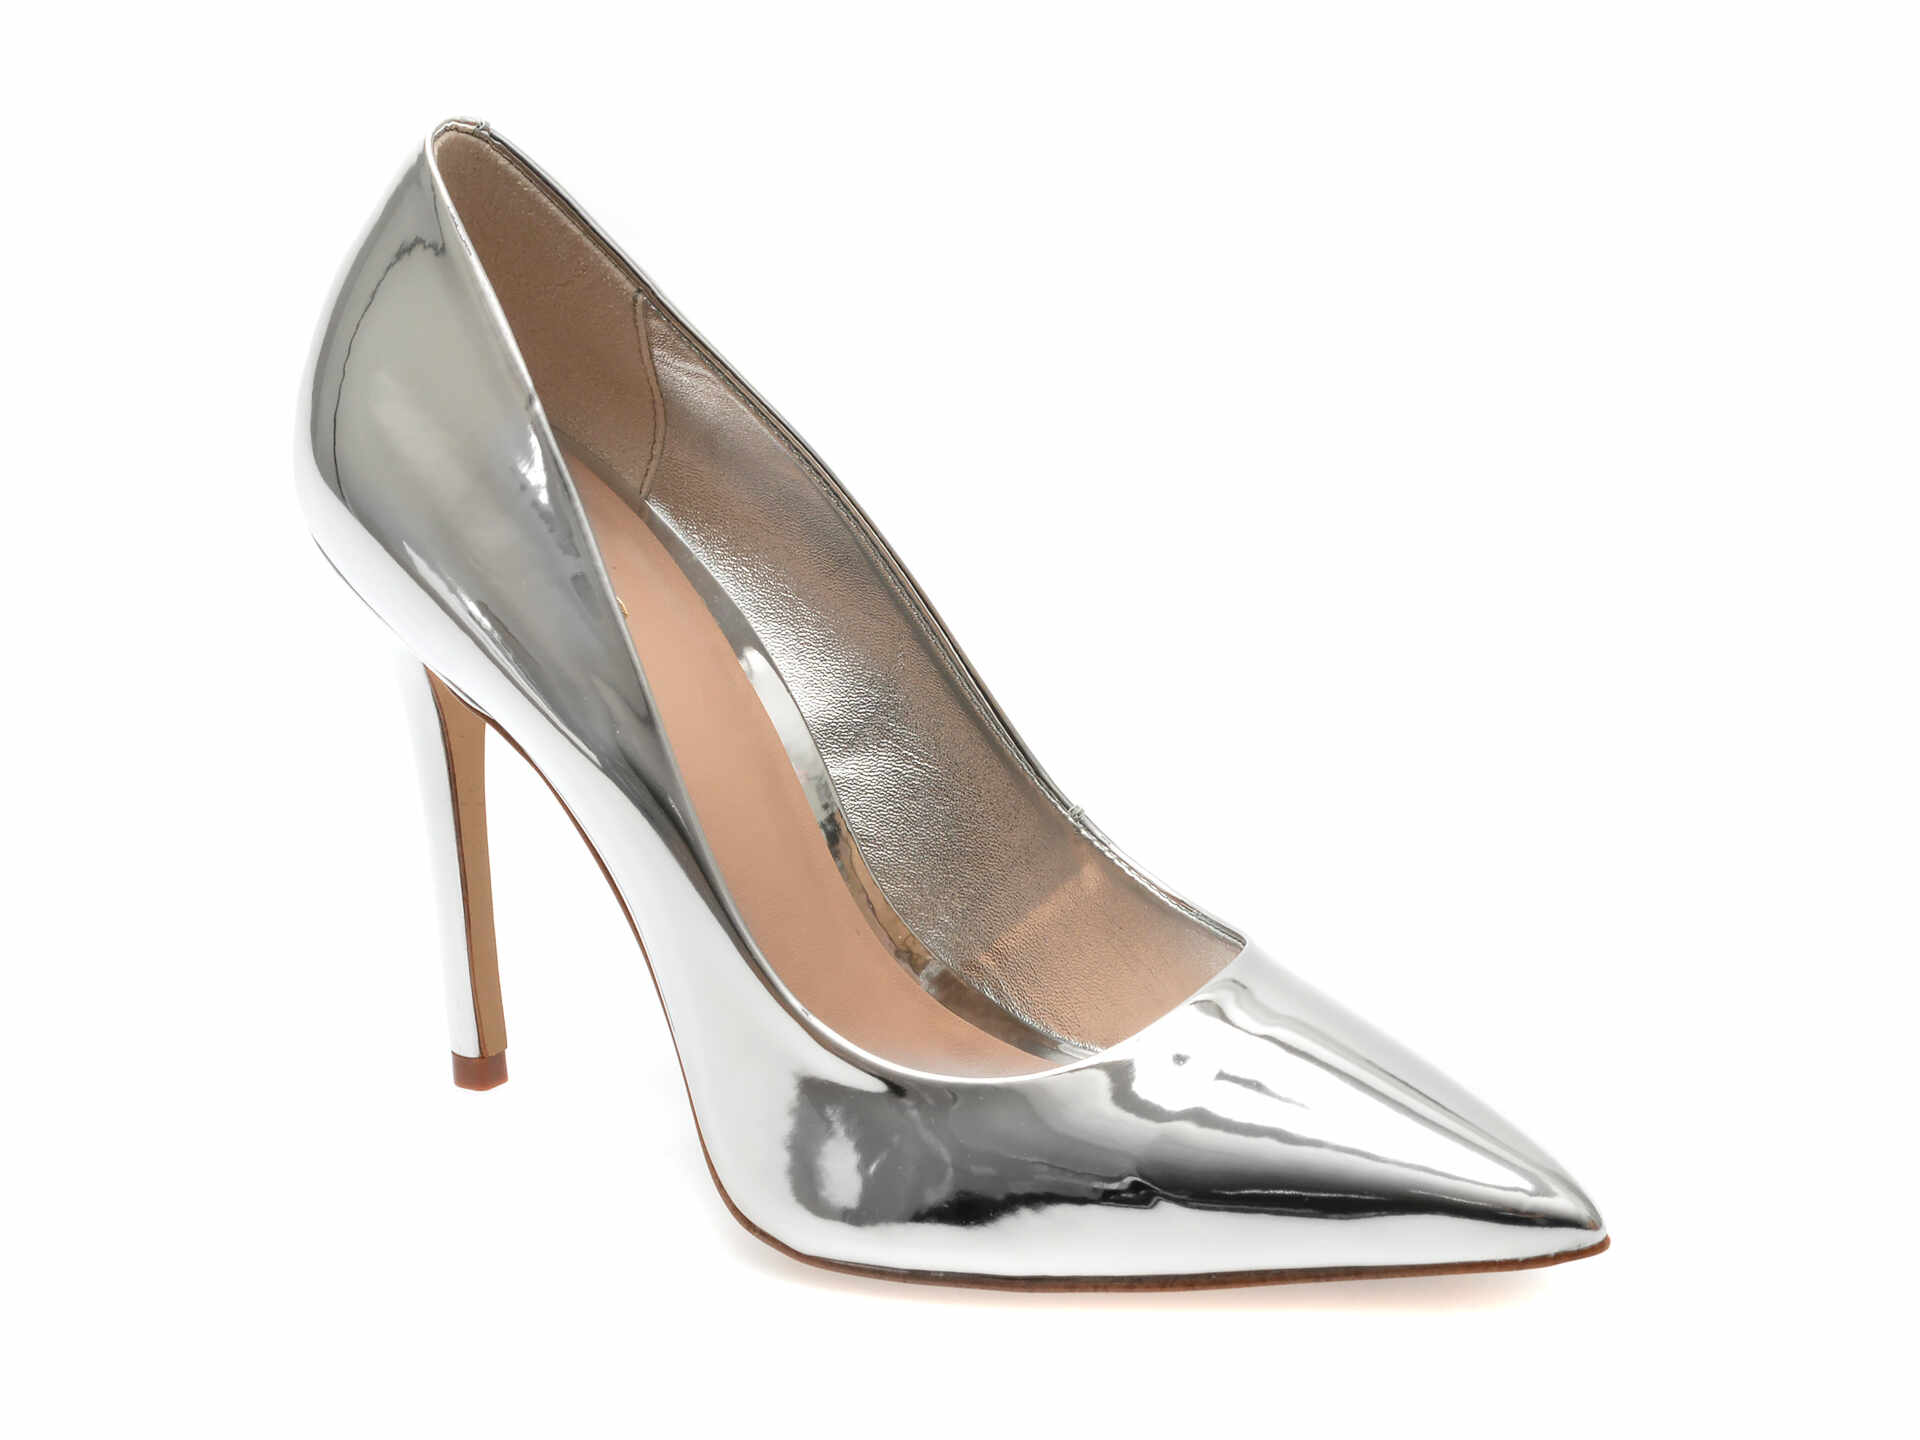 Pantofi eleganti ALDO argintii, CASSEDYNA040, din piele ecologica lacuita